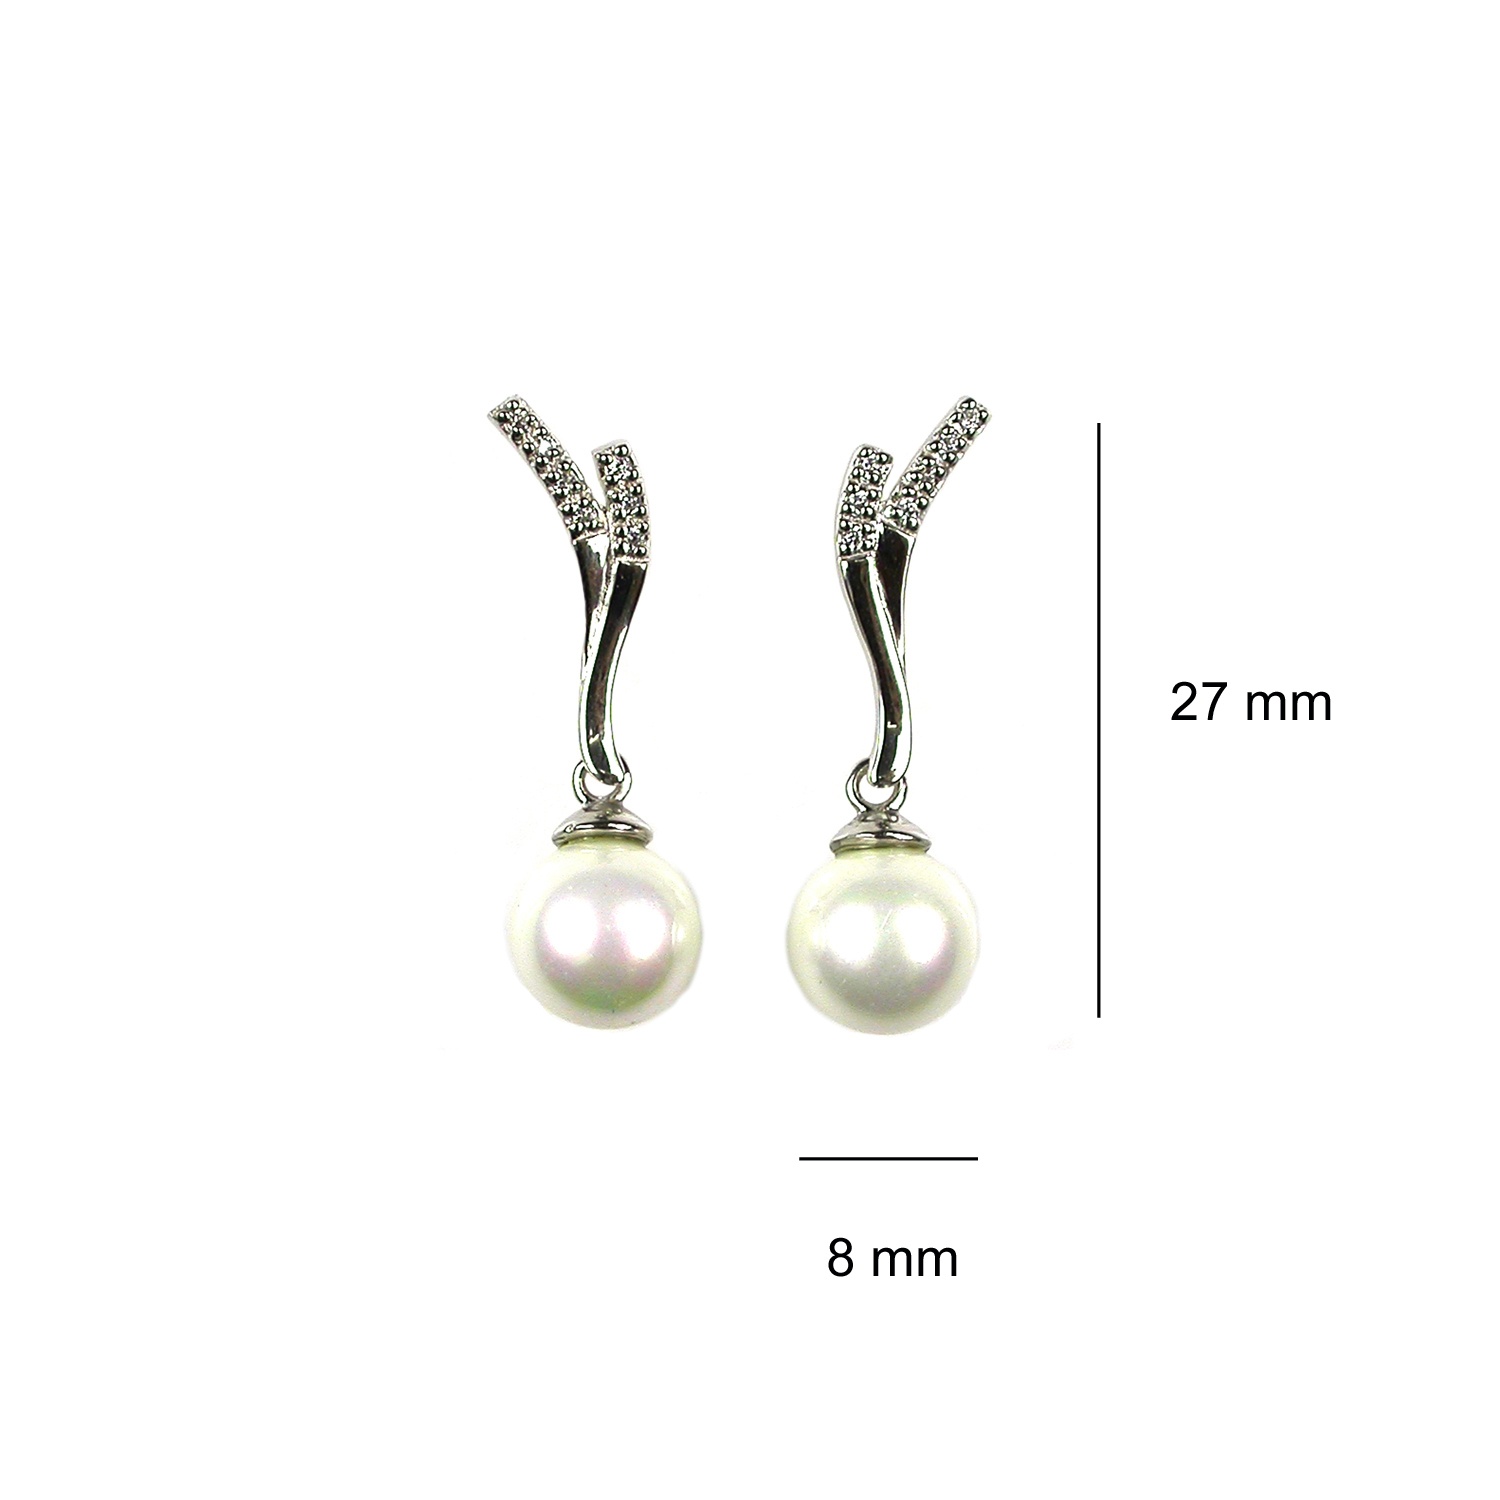 Pendientes de Plata con perlas 3